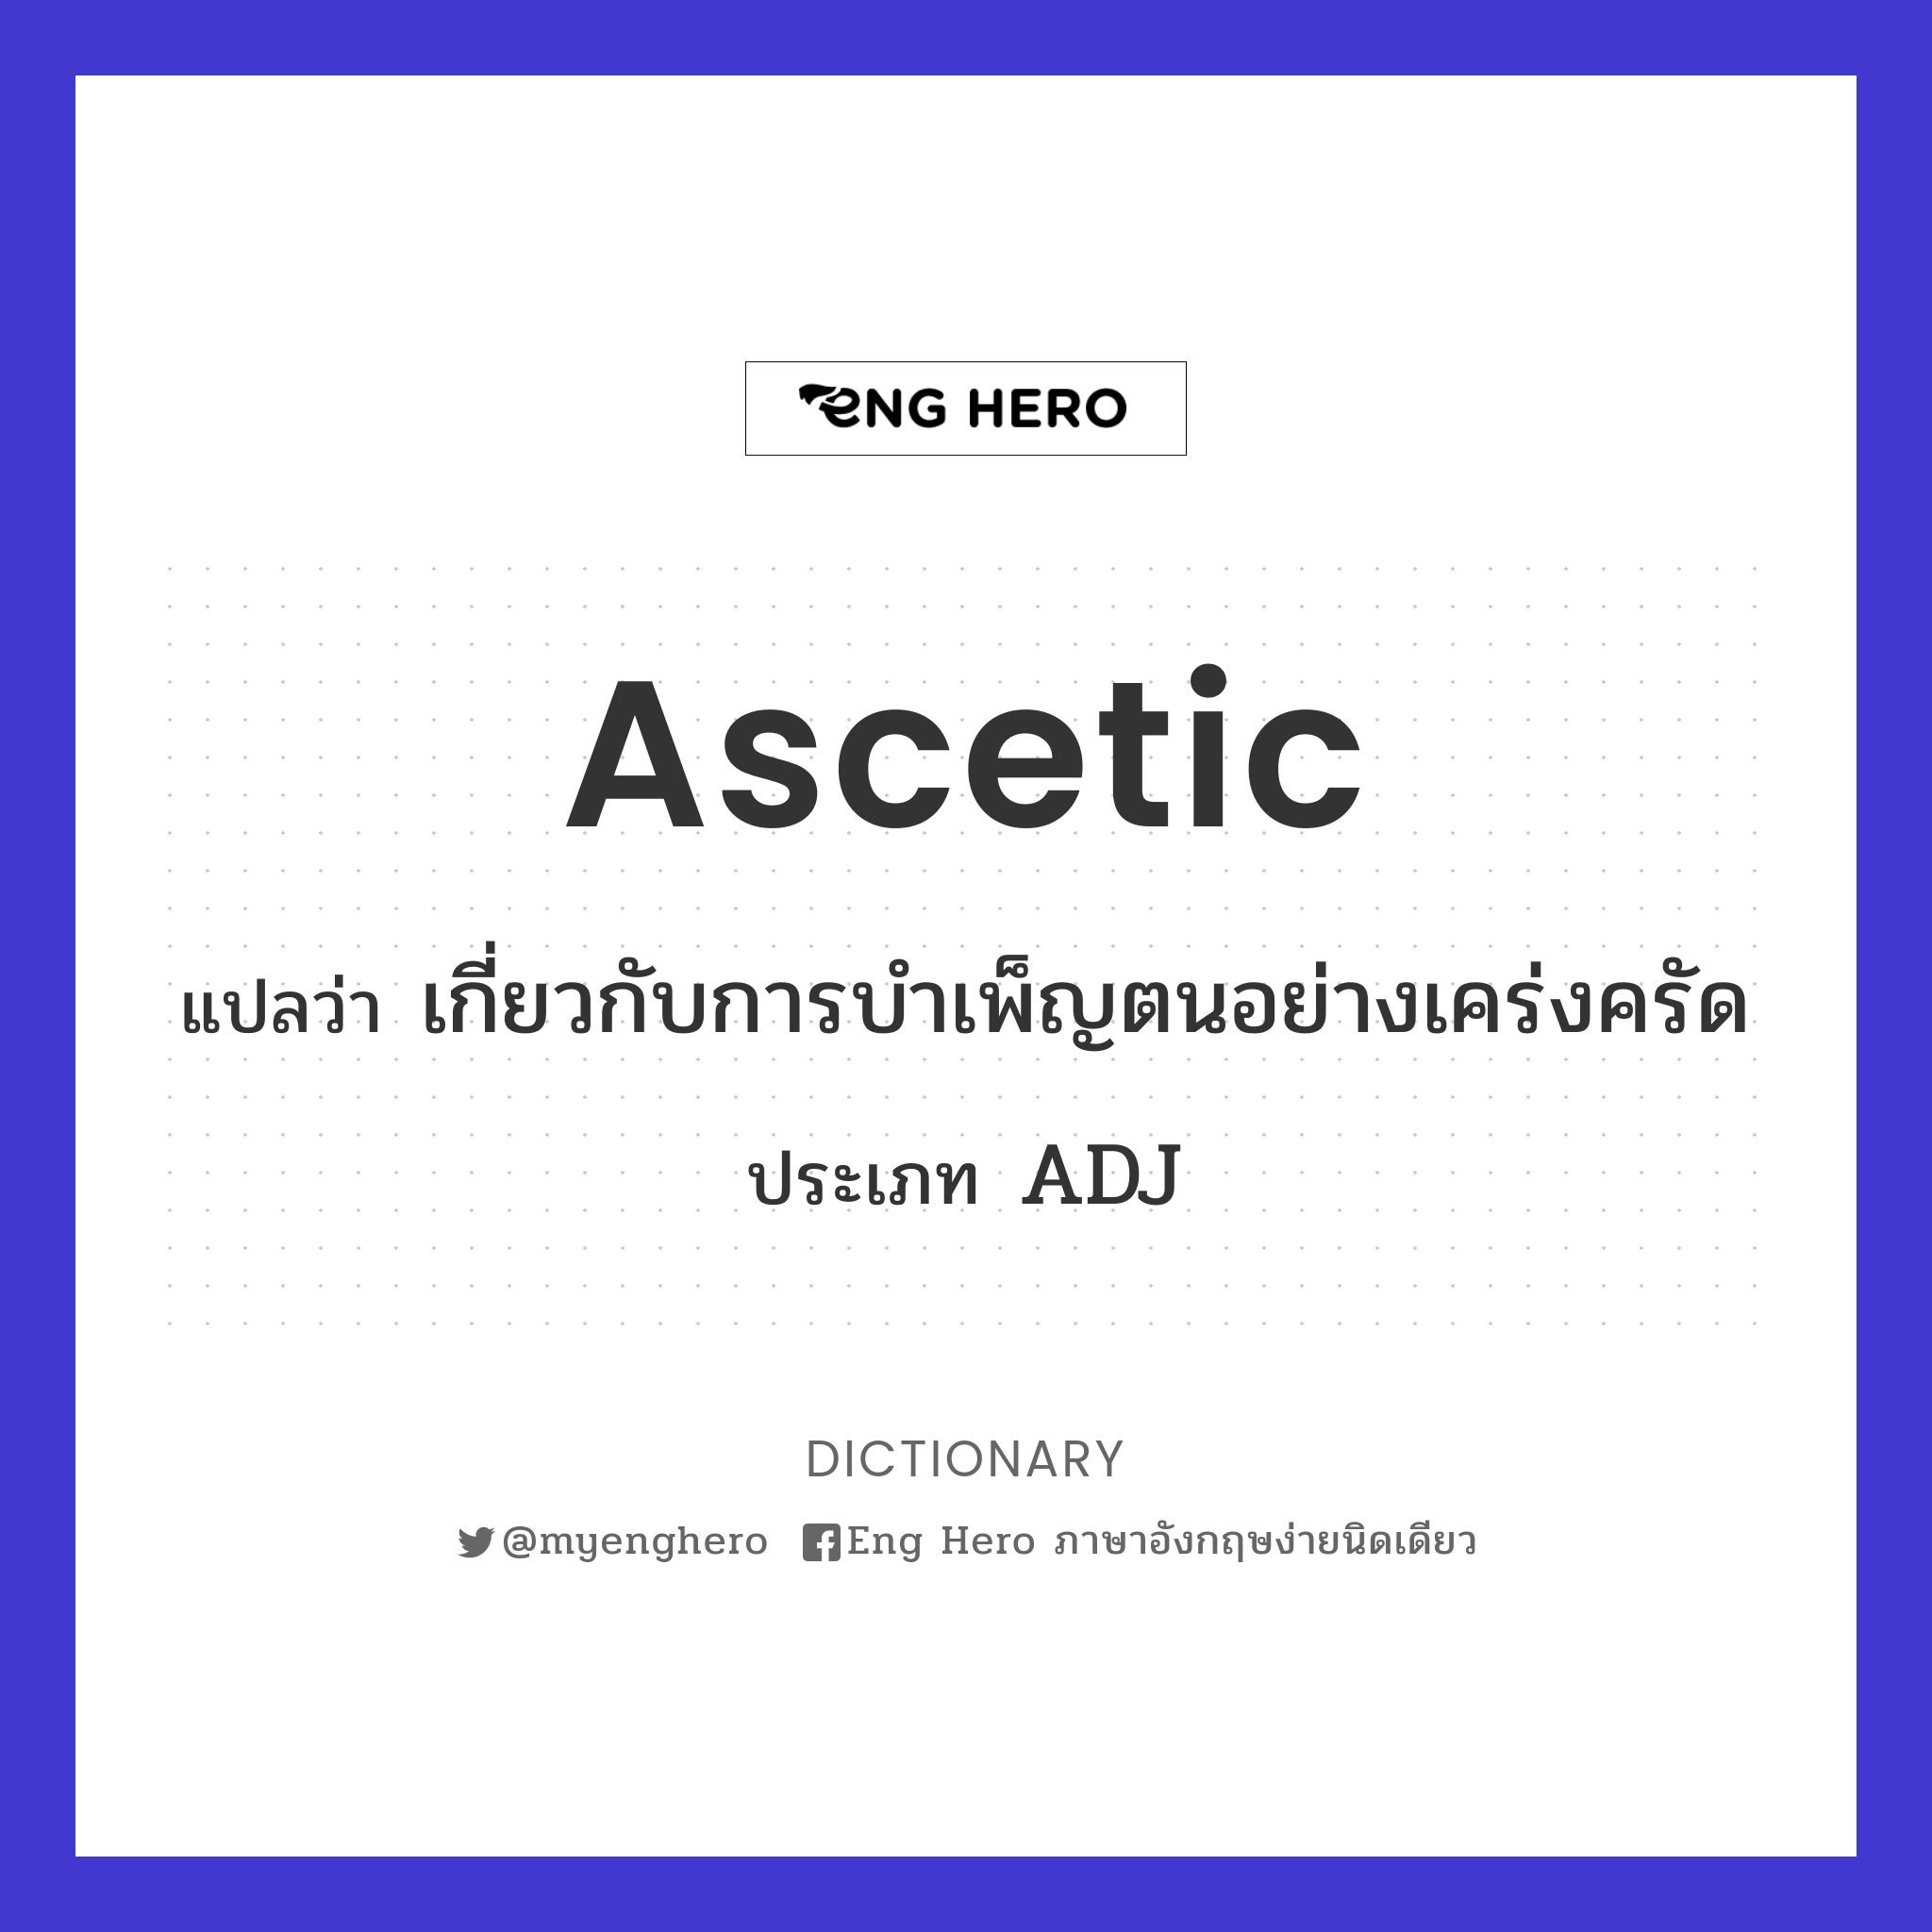 ascetic